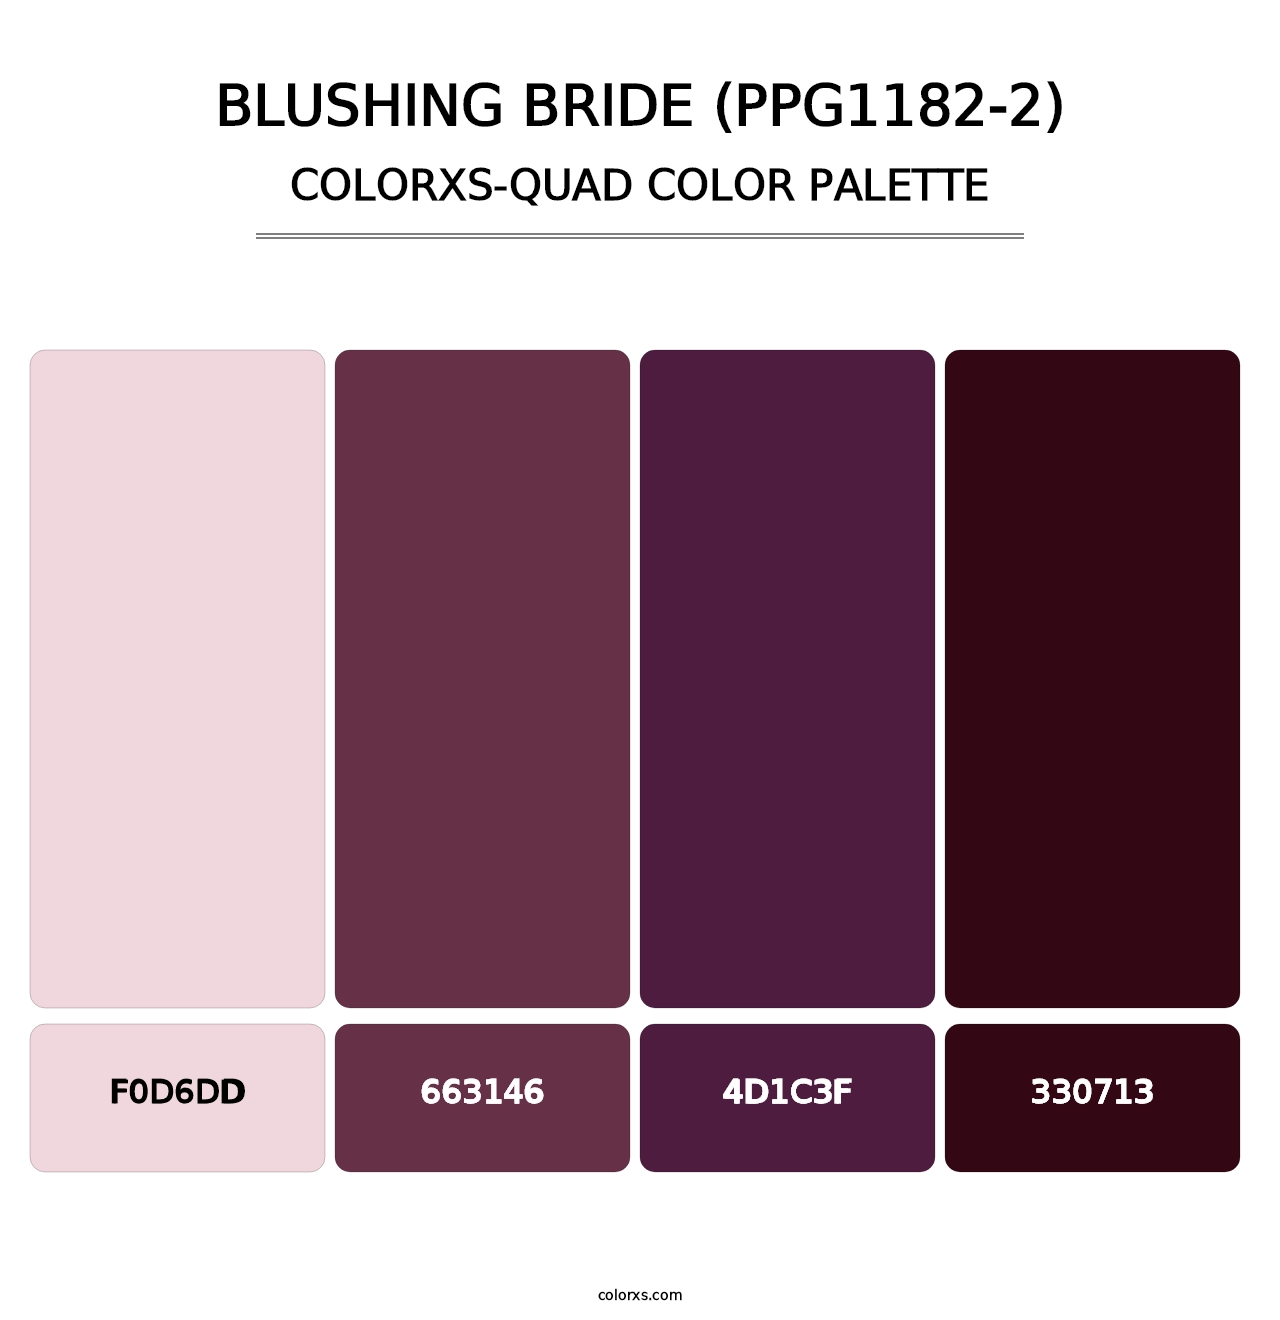 Blushing Bride (PPG1182-2) - Colorxs Quad Palette